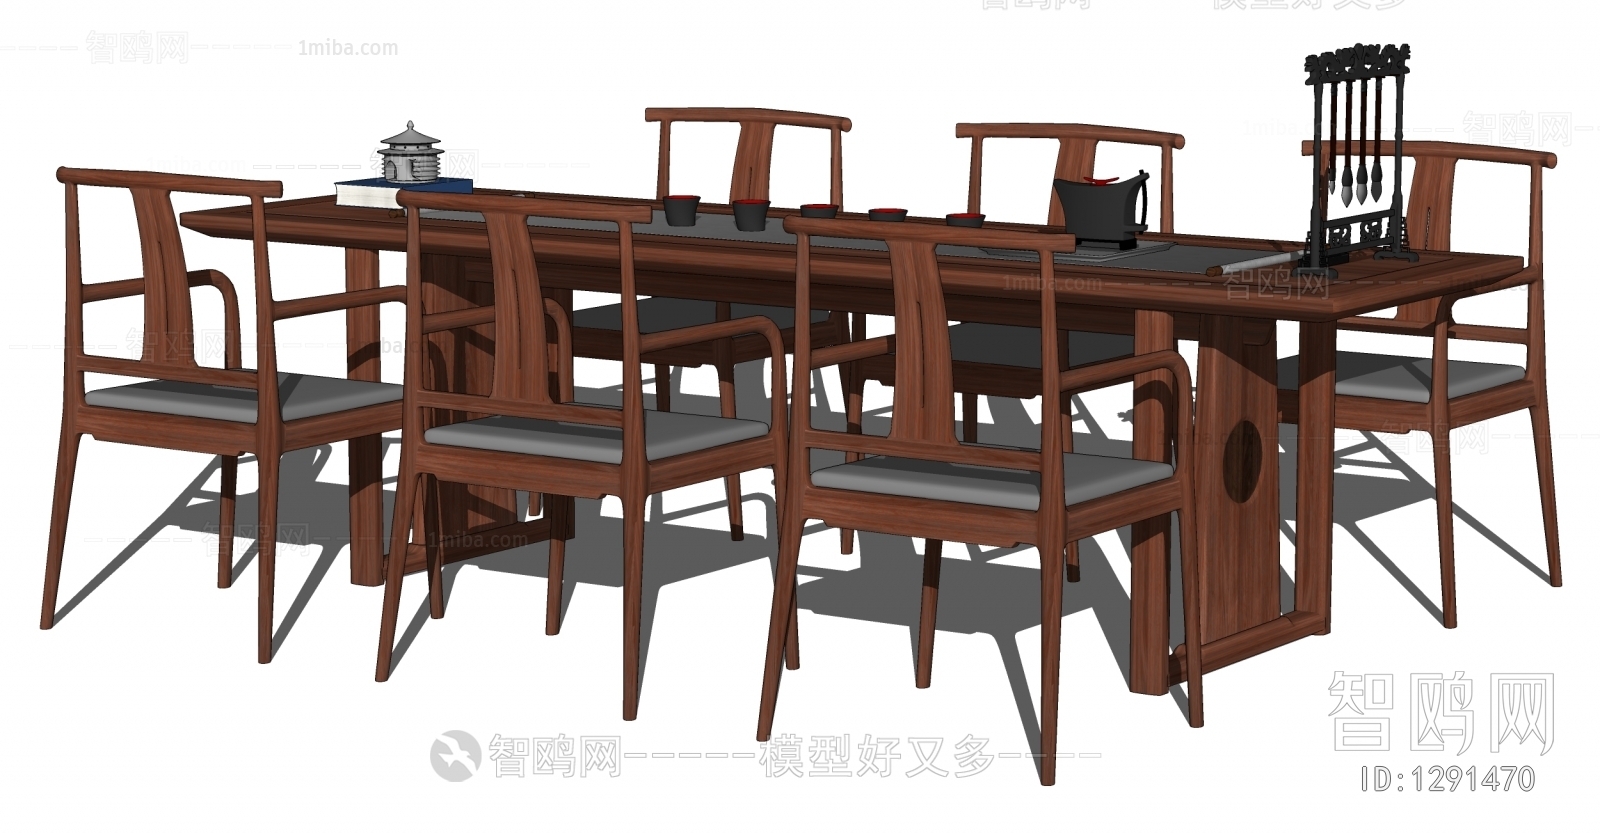 中式书桌椅组合 茶桌椅 餐桌椅 休闲桌椅 茶具茶杯 毛笔架